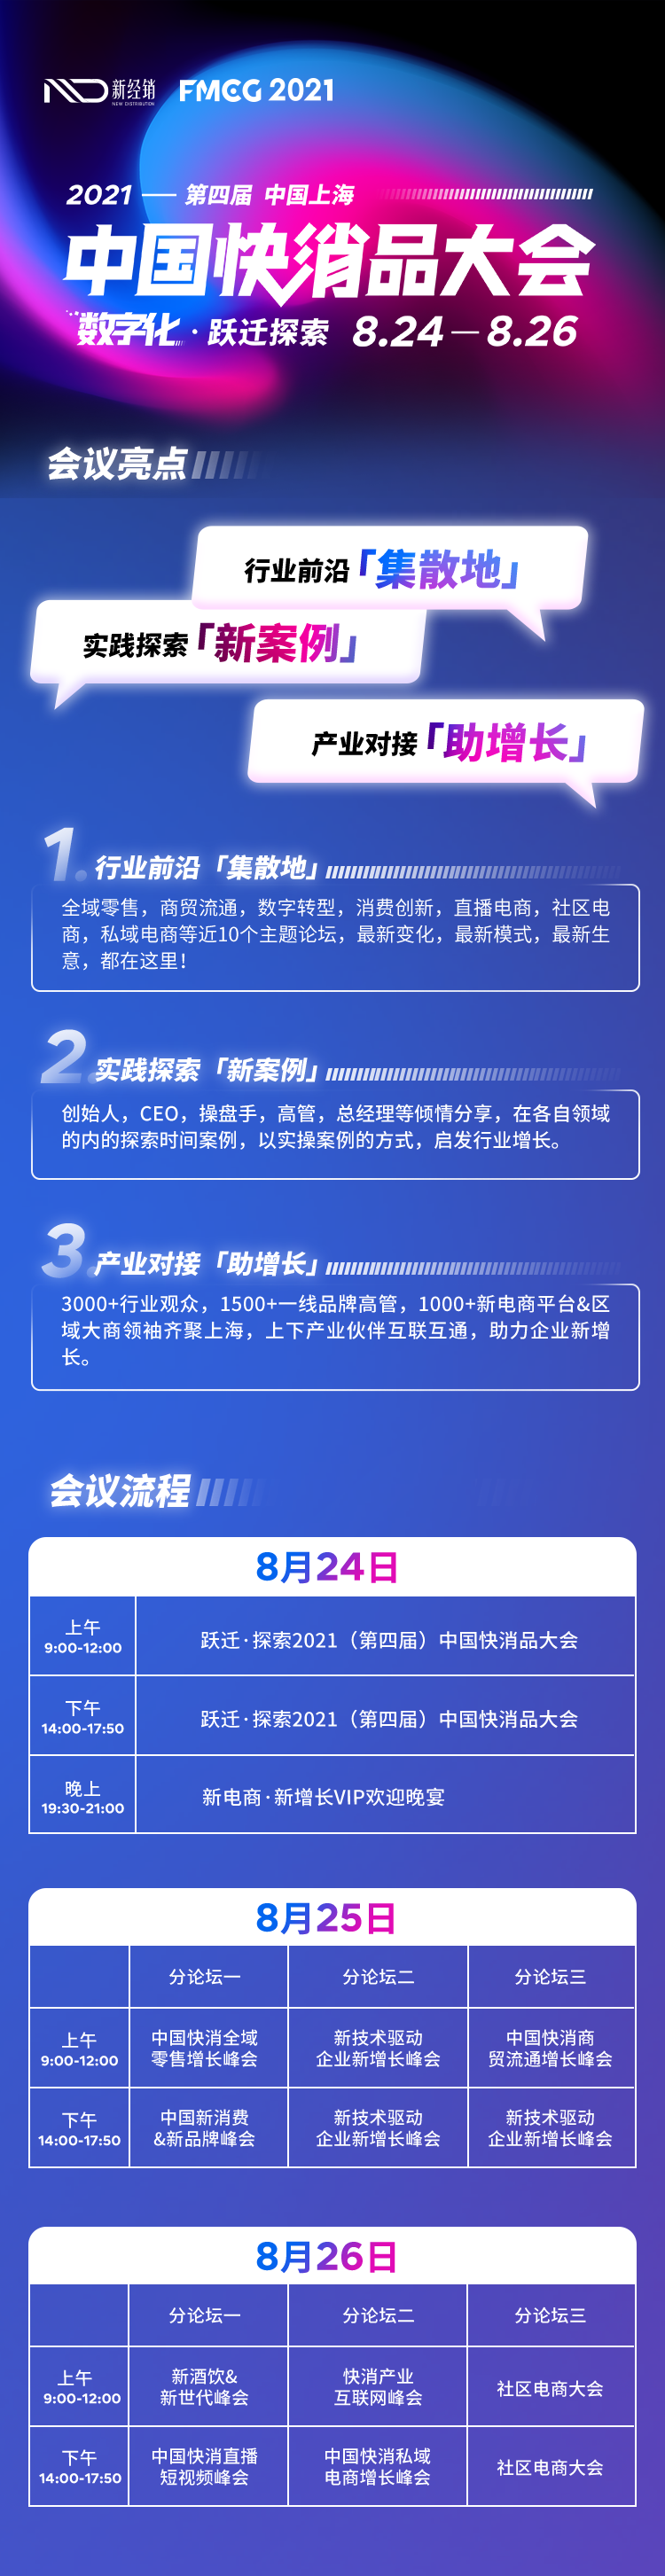 美宜佳控股总经理姚旭鸿先生确认出席2021第四届中国快消品大会